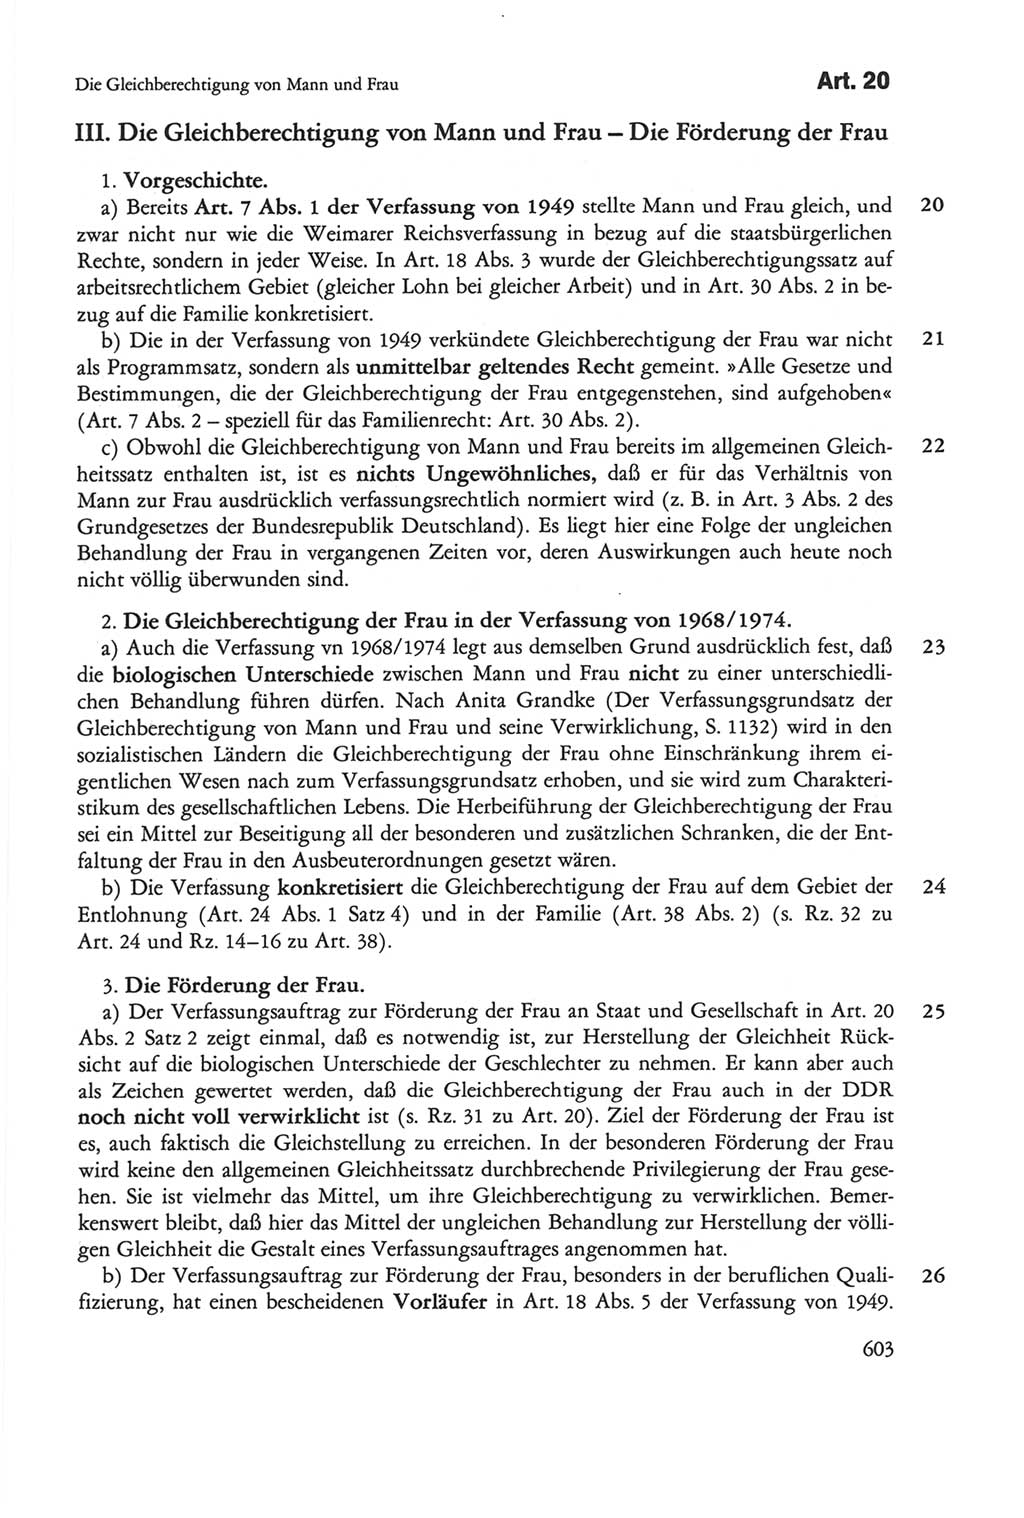 Die sozialistische Verfassung der Deutschen Demokratischen Republik (DDR), Kommentar 1982, Seite 603 (Soz. Verf. DDR Komm. 1982, S. 603)